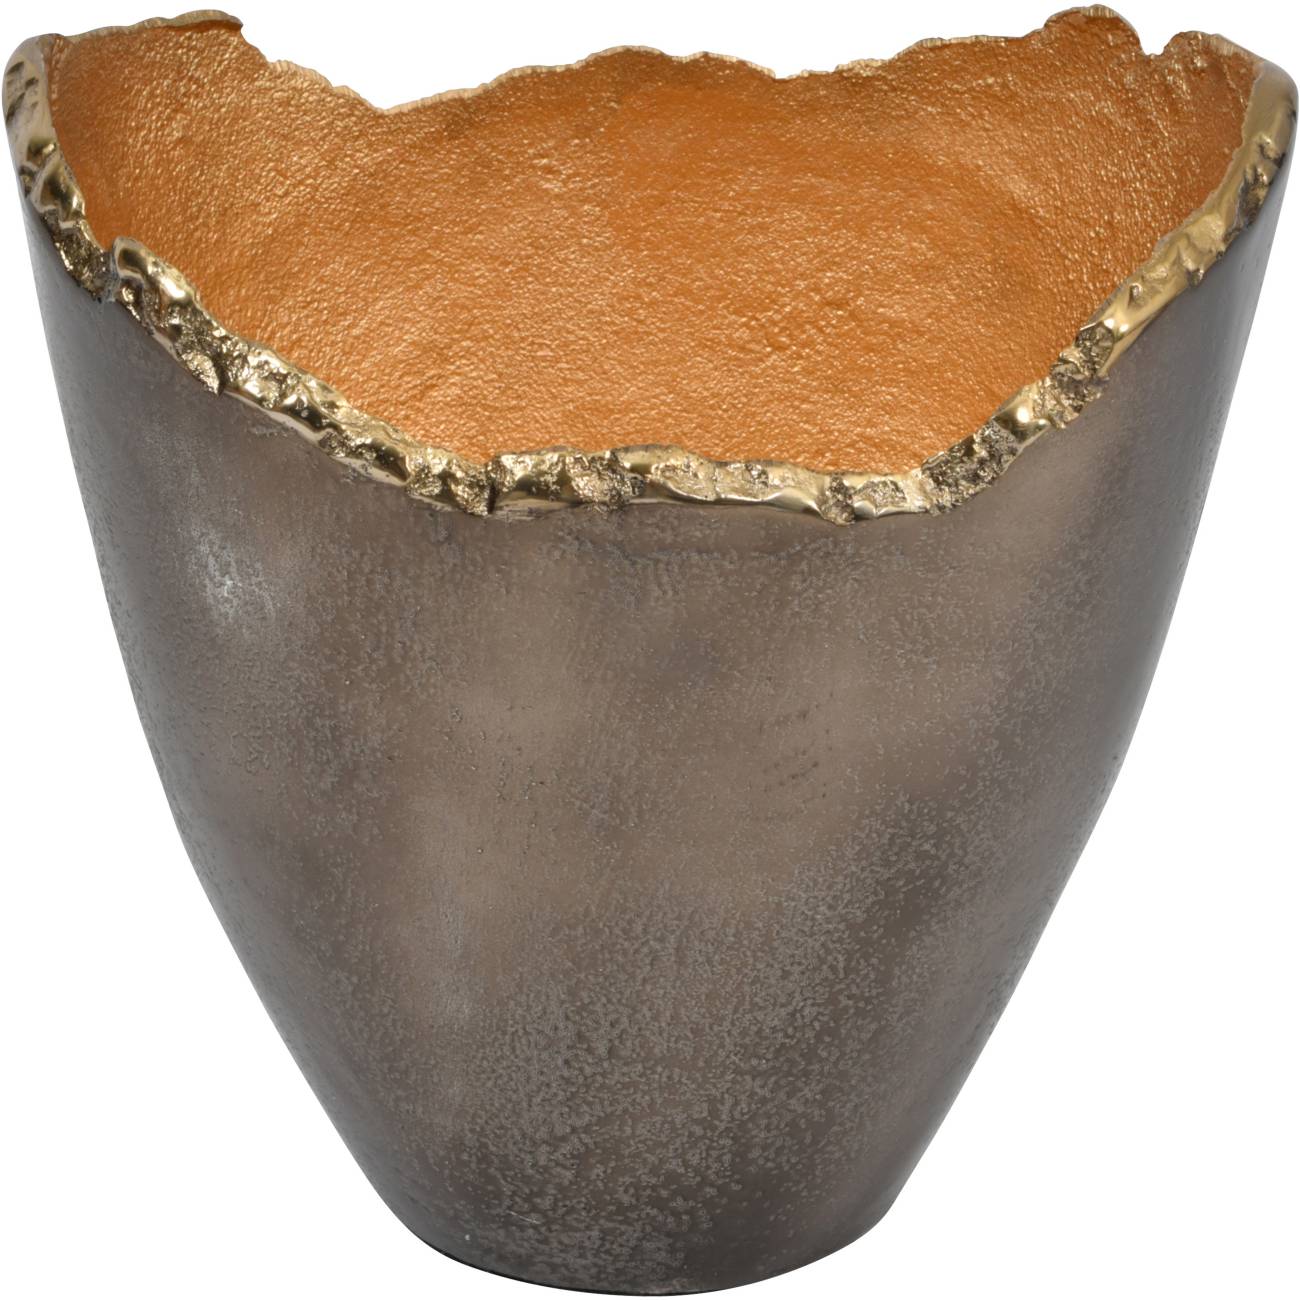 Merapi Lava Small Vase